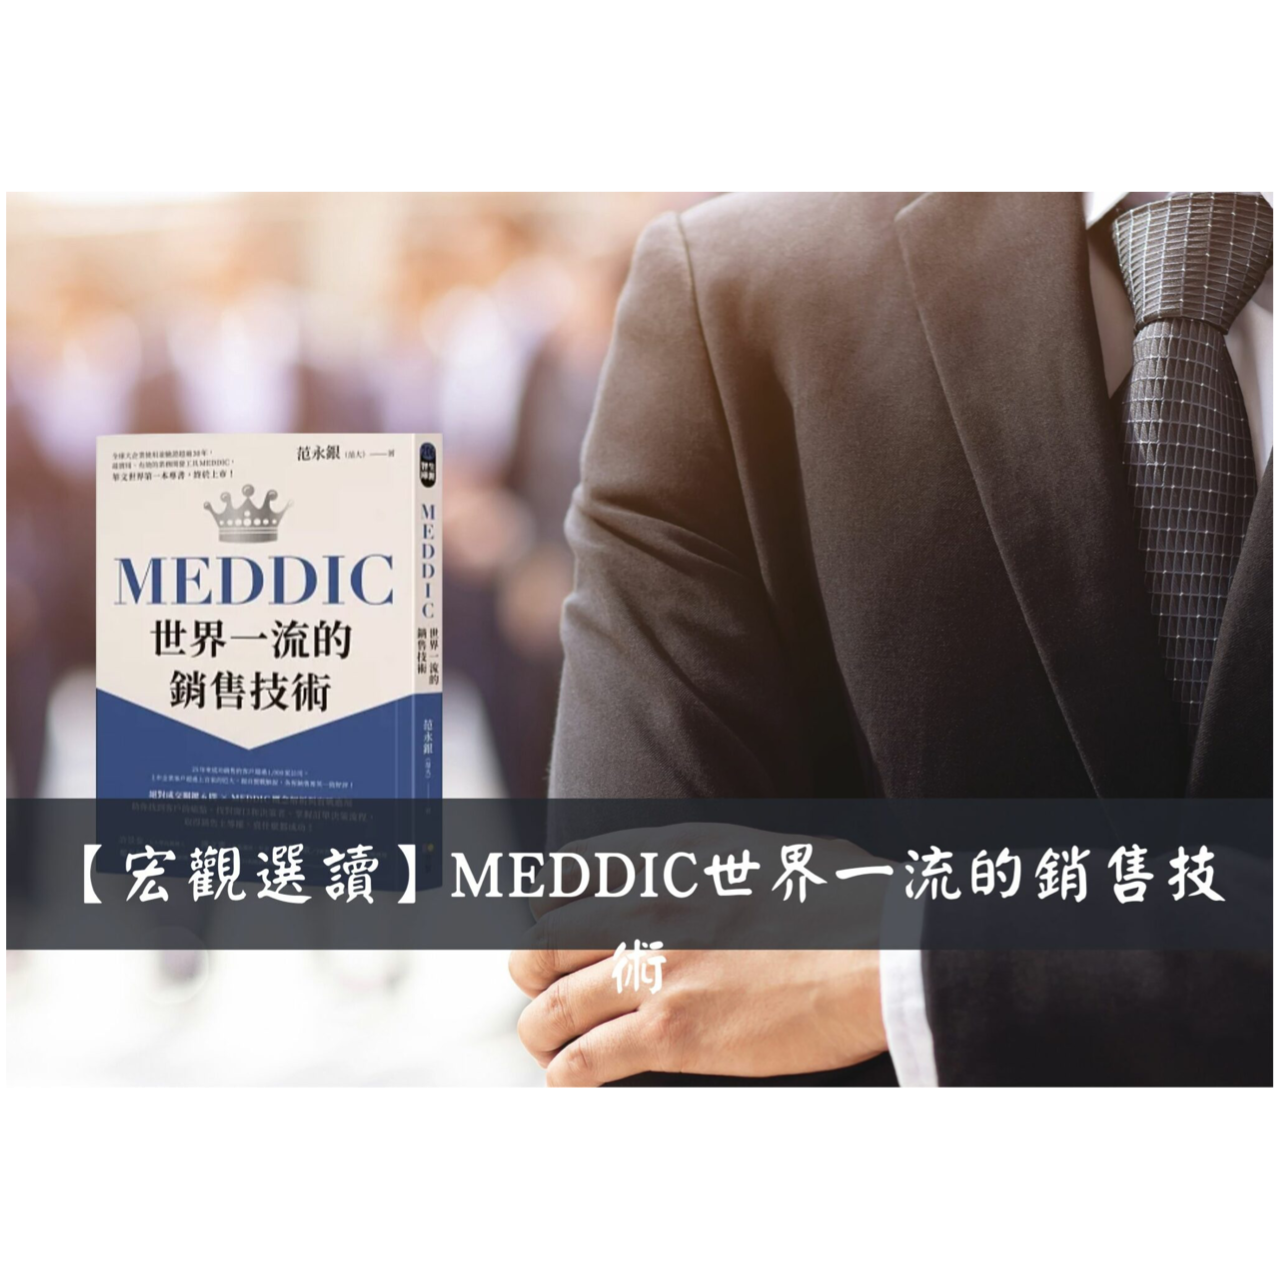 鄭安宏 MEDDIC-世界一流的銷售技術